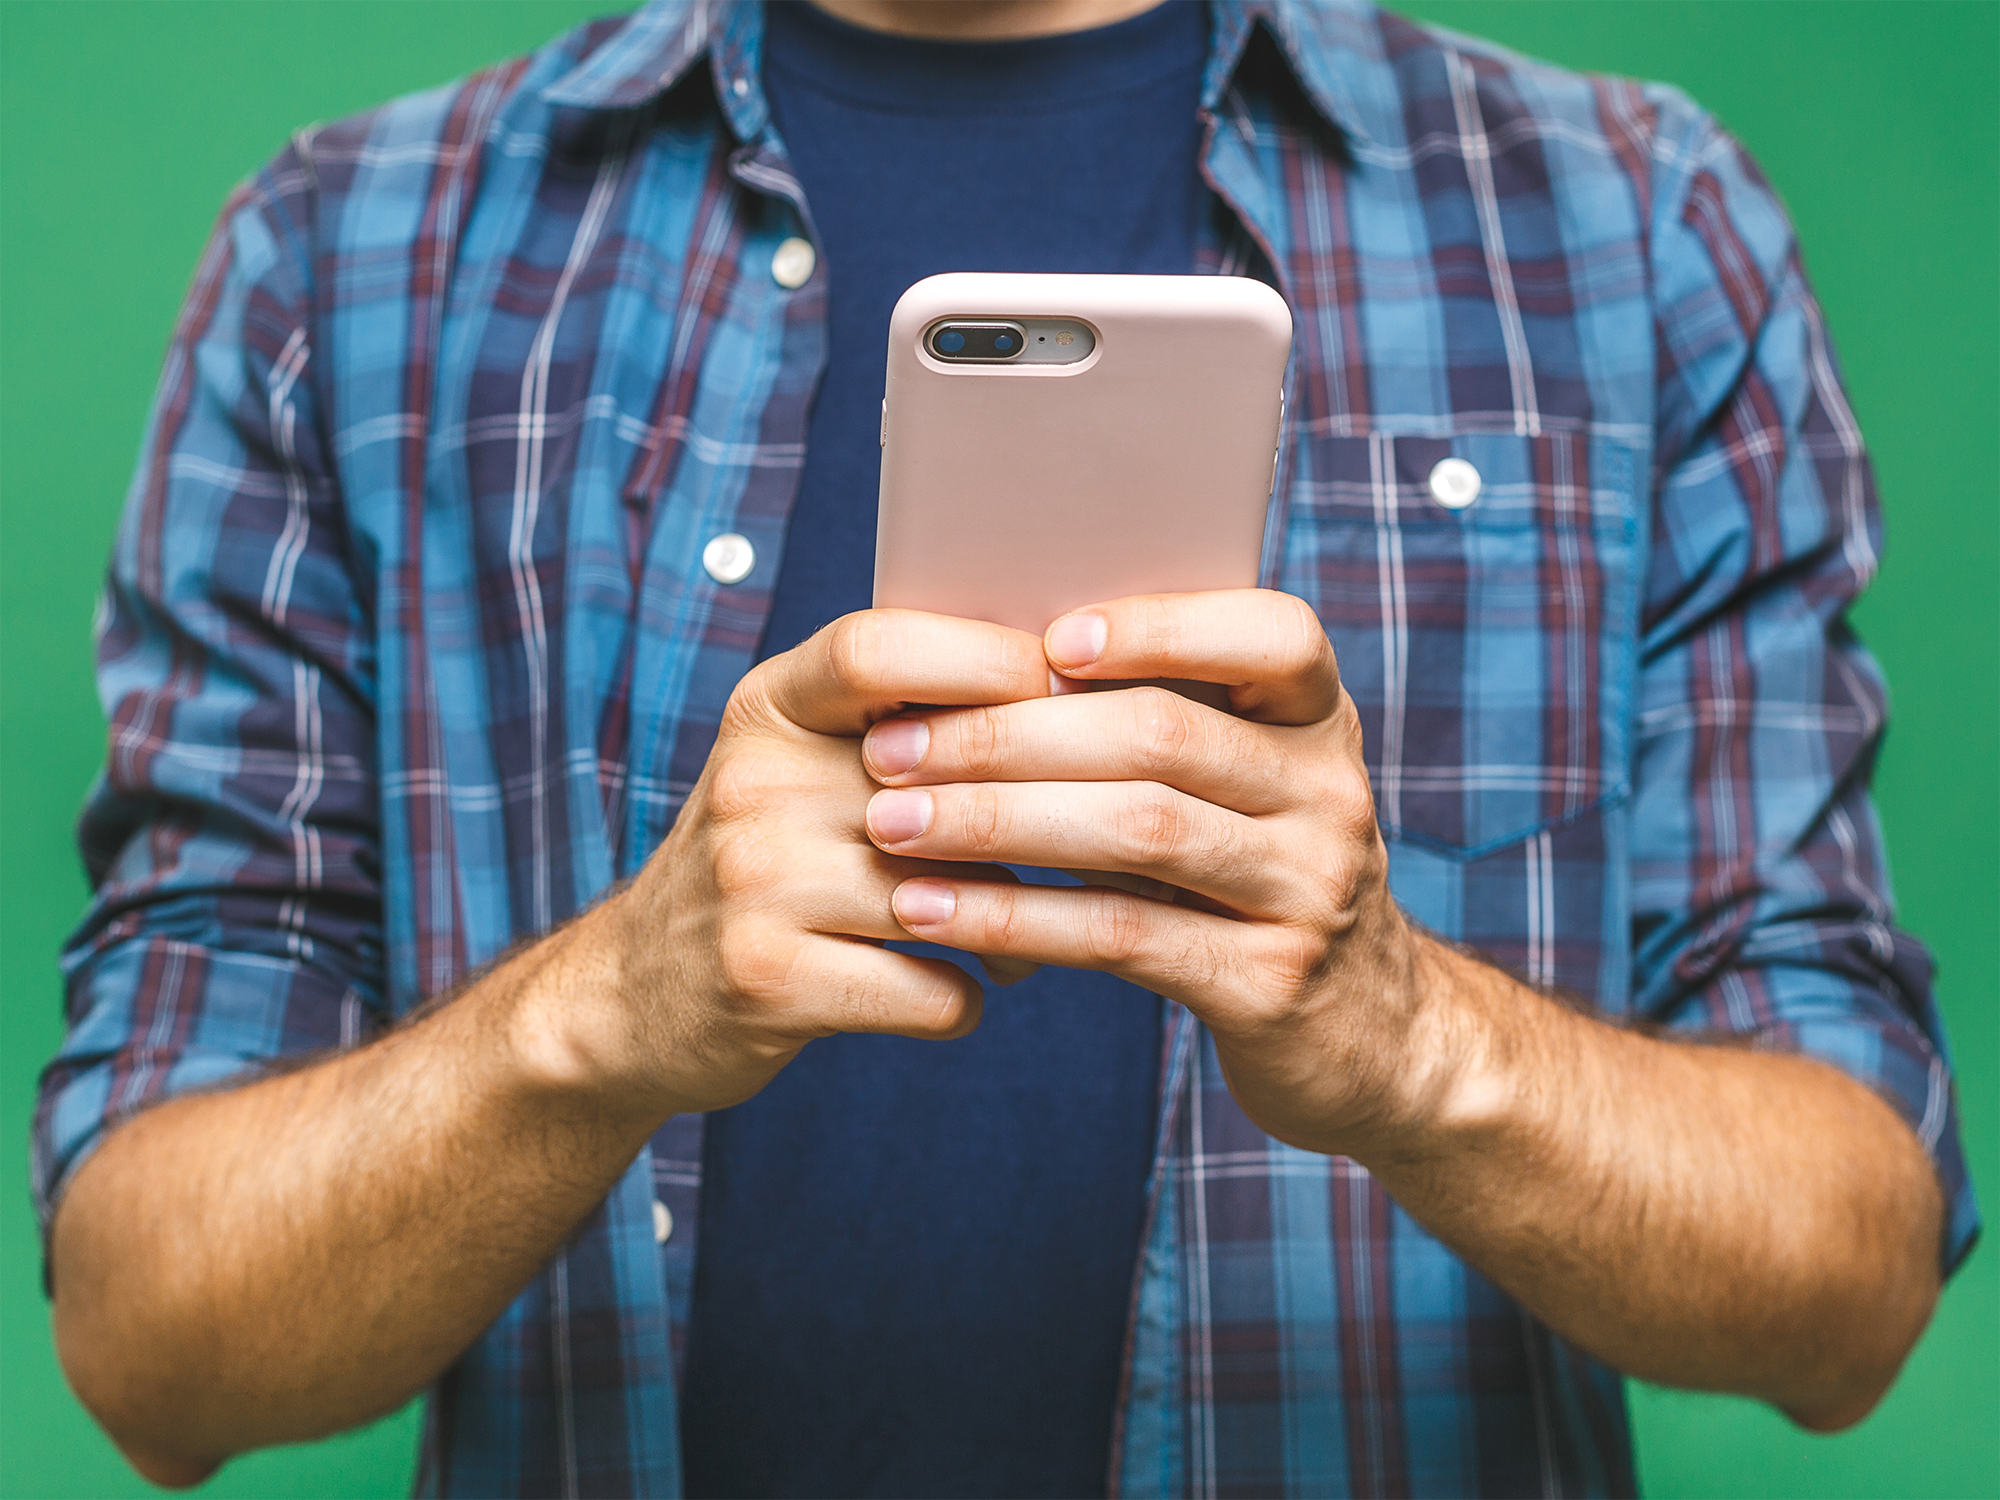 Illustrasjonfoto (beskjært) av mann i rutete skjorte som holder mobiltelefon, grønn bakgrunn